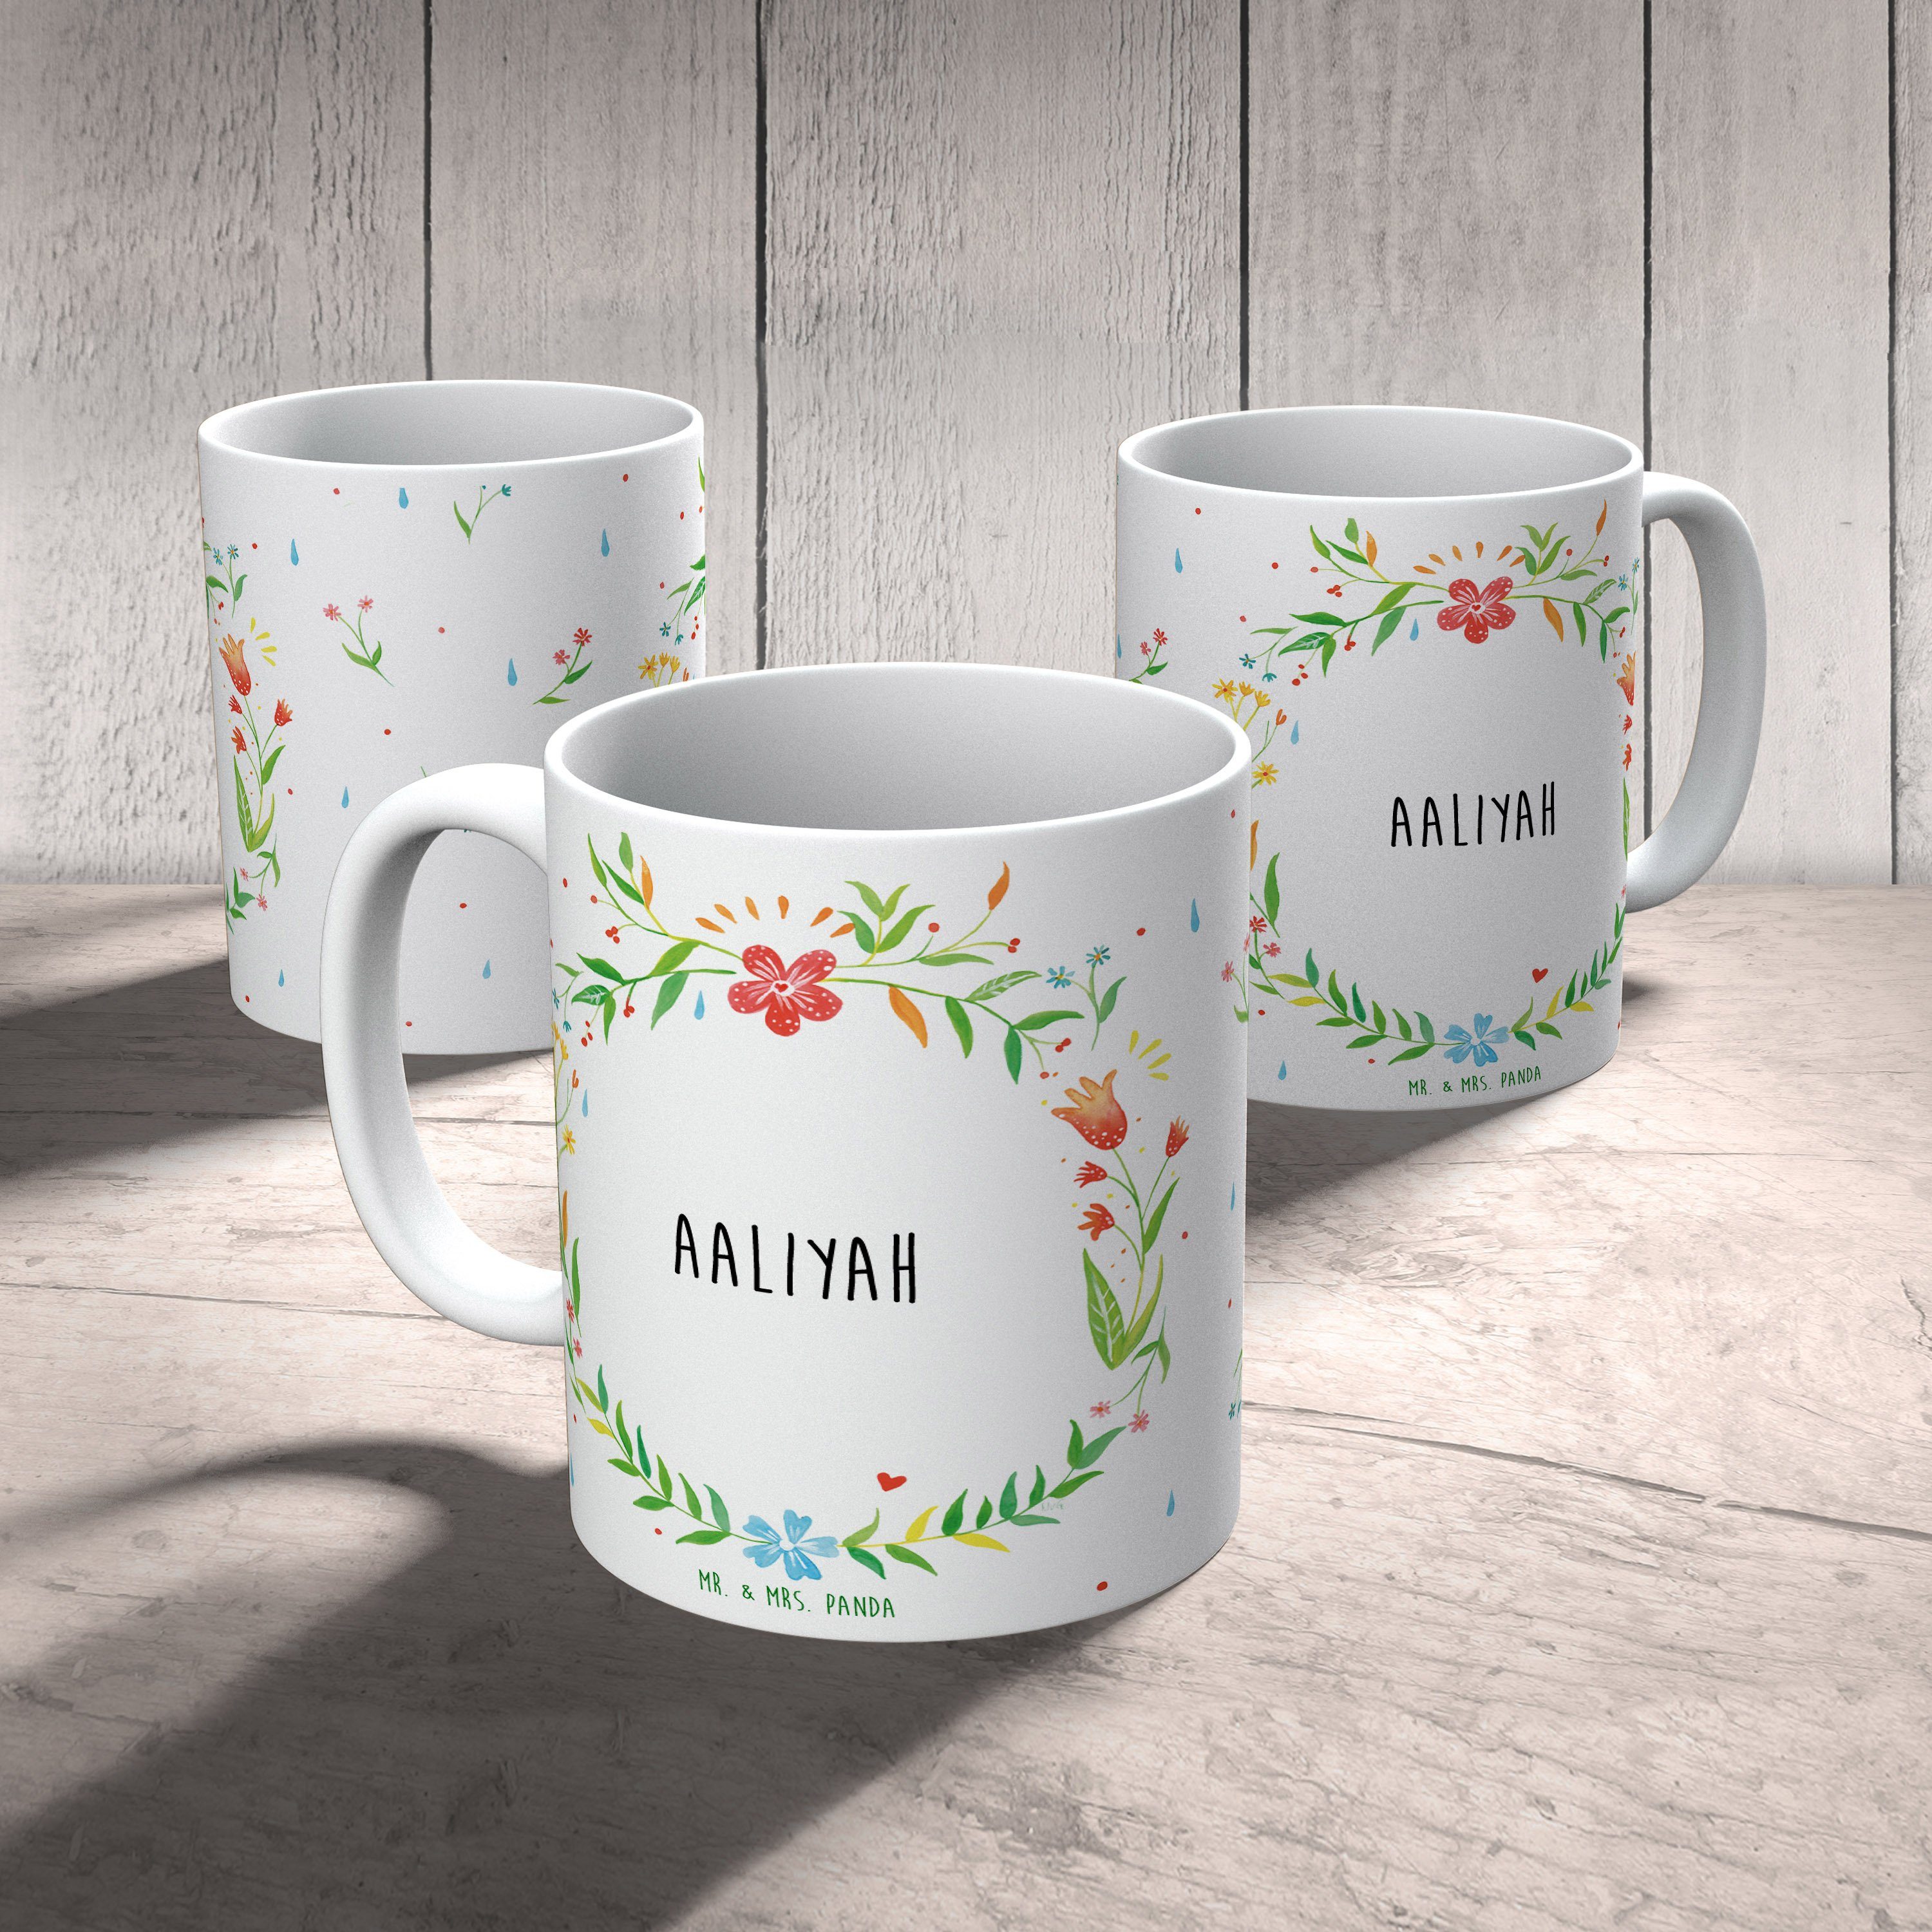 & Keramik Mrs. Aaliyah Büro Panda Mr. Tasse, Kaffeetasse, Ge, Geschenk, Becher, - Tasse Kaffeebecher,